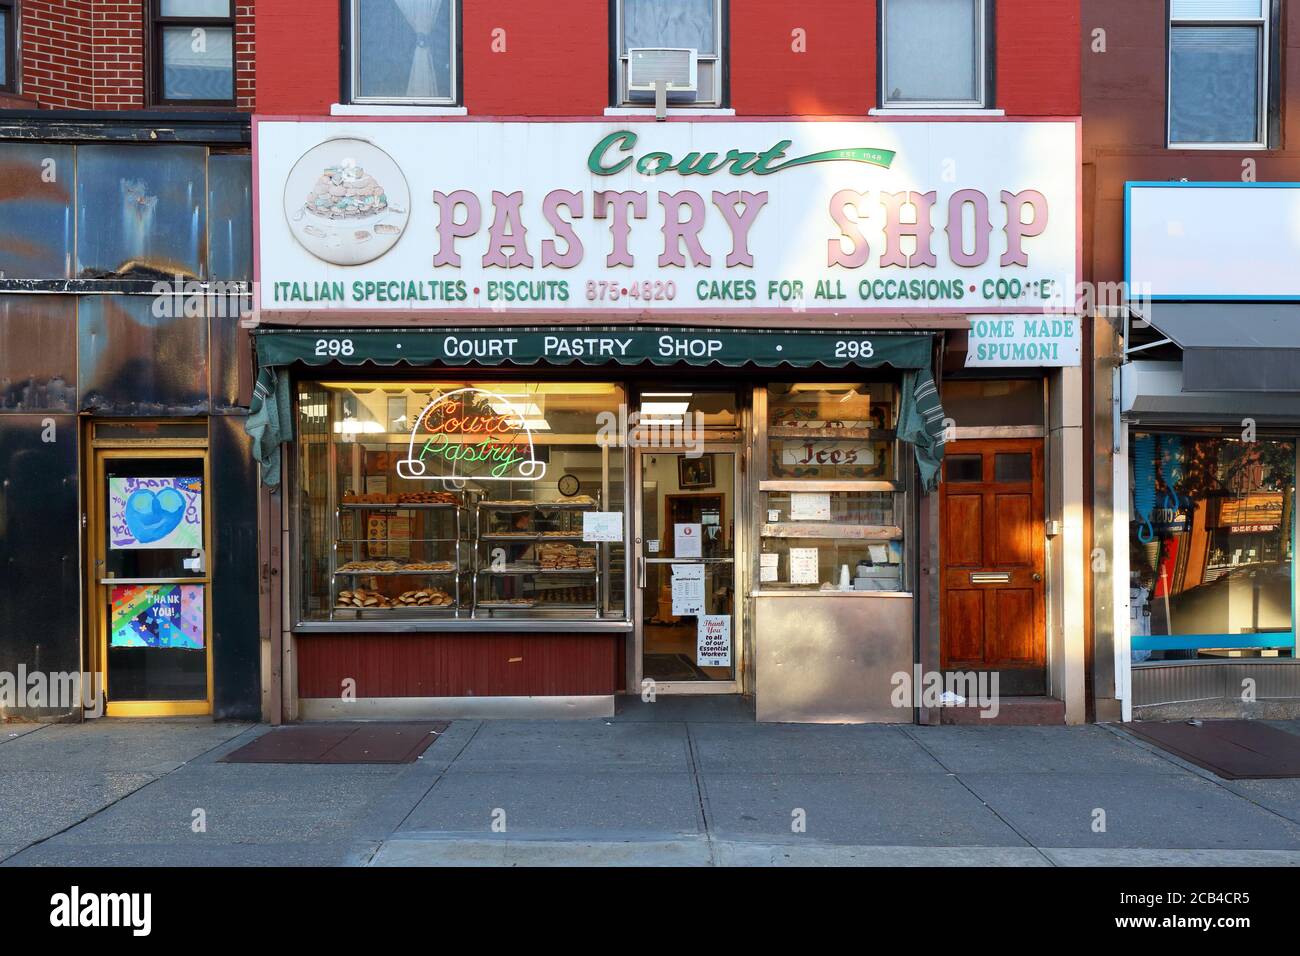 Court Pastry Shop, 298 court St, Brooklyn, NY. Façade extérieure d'une boulangerie italienne américaine dans le quartier de Carroll Gardens. Banque D'Images